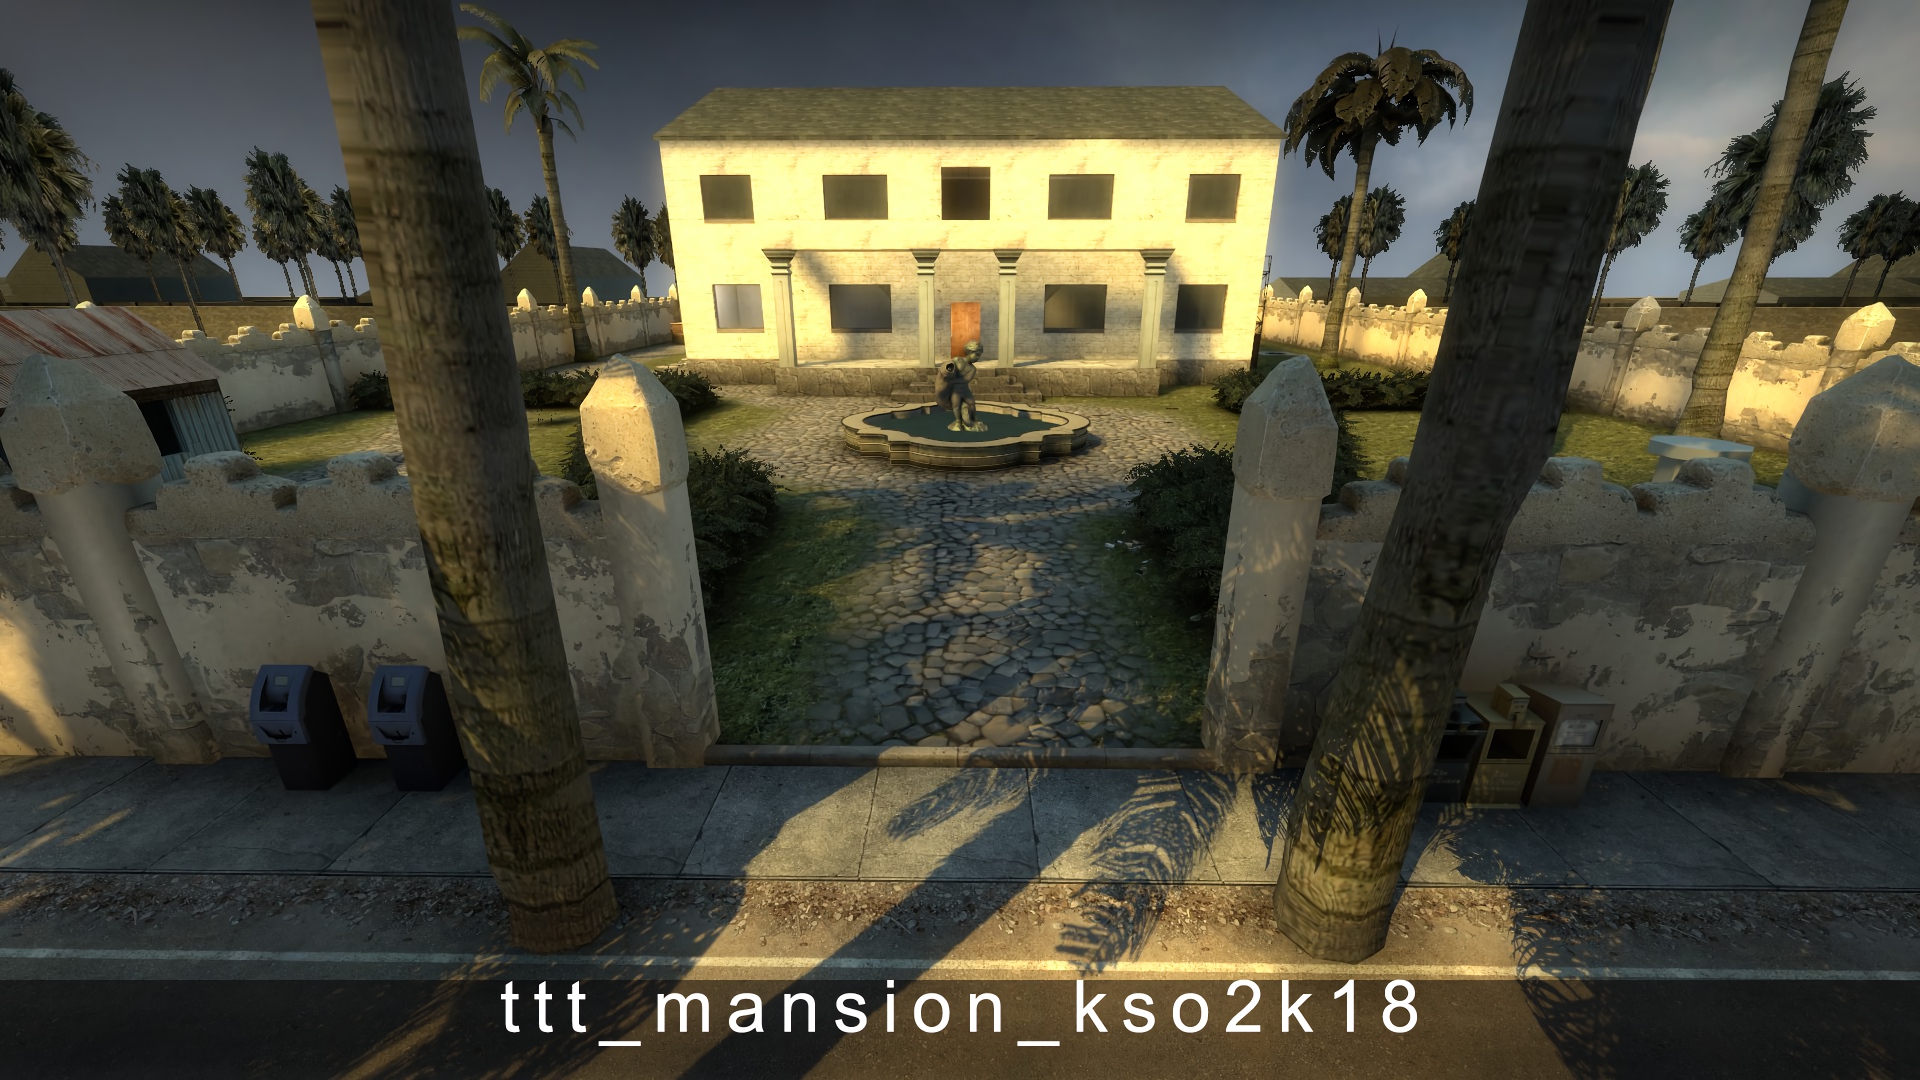 ttt_mansion_kso2k18.jpg